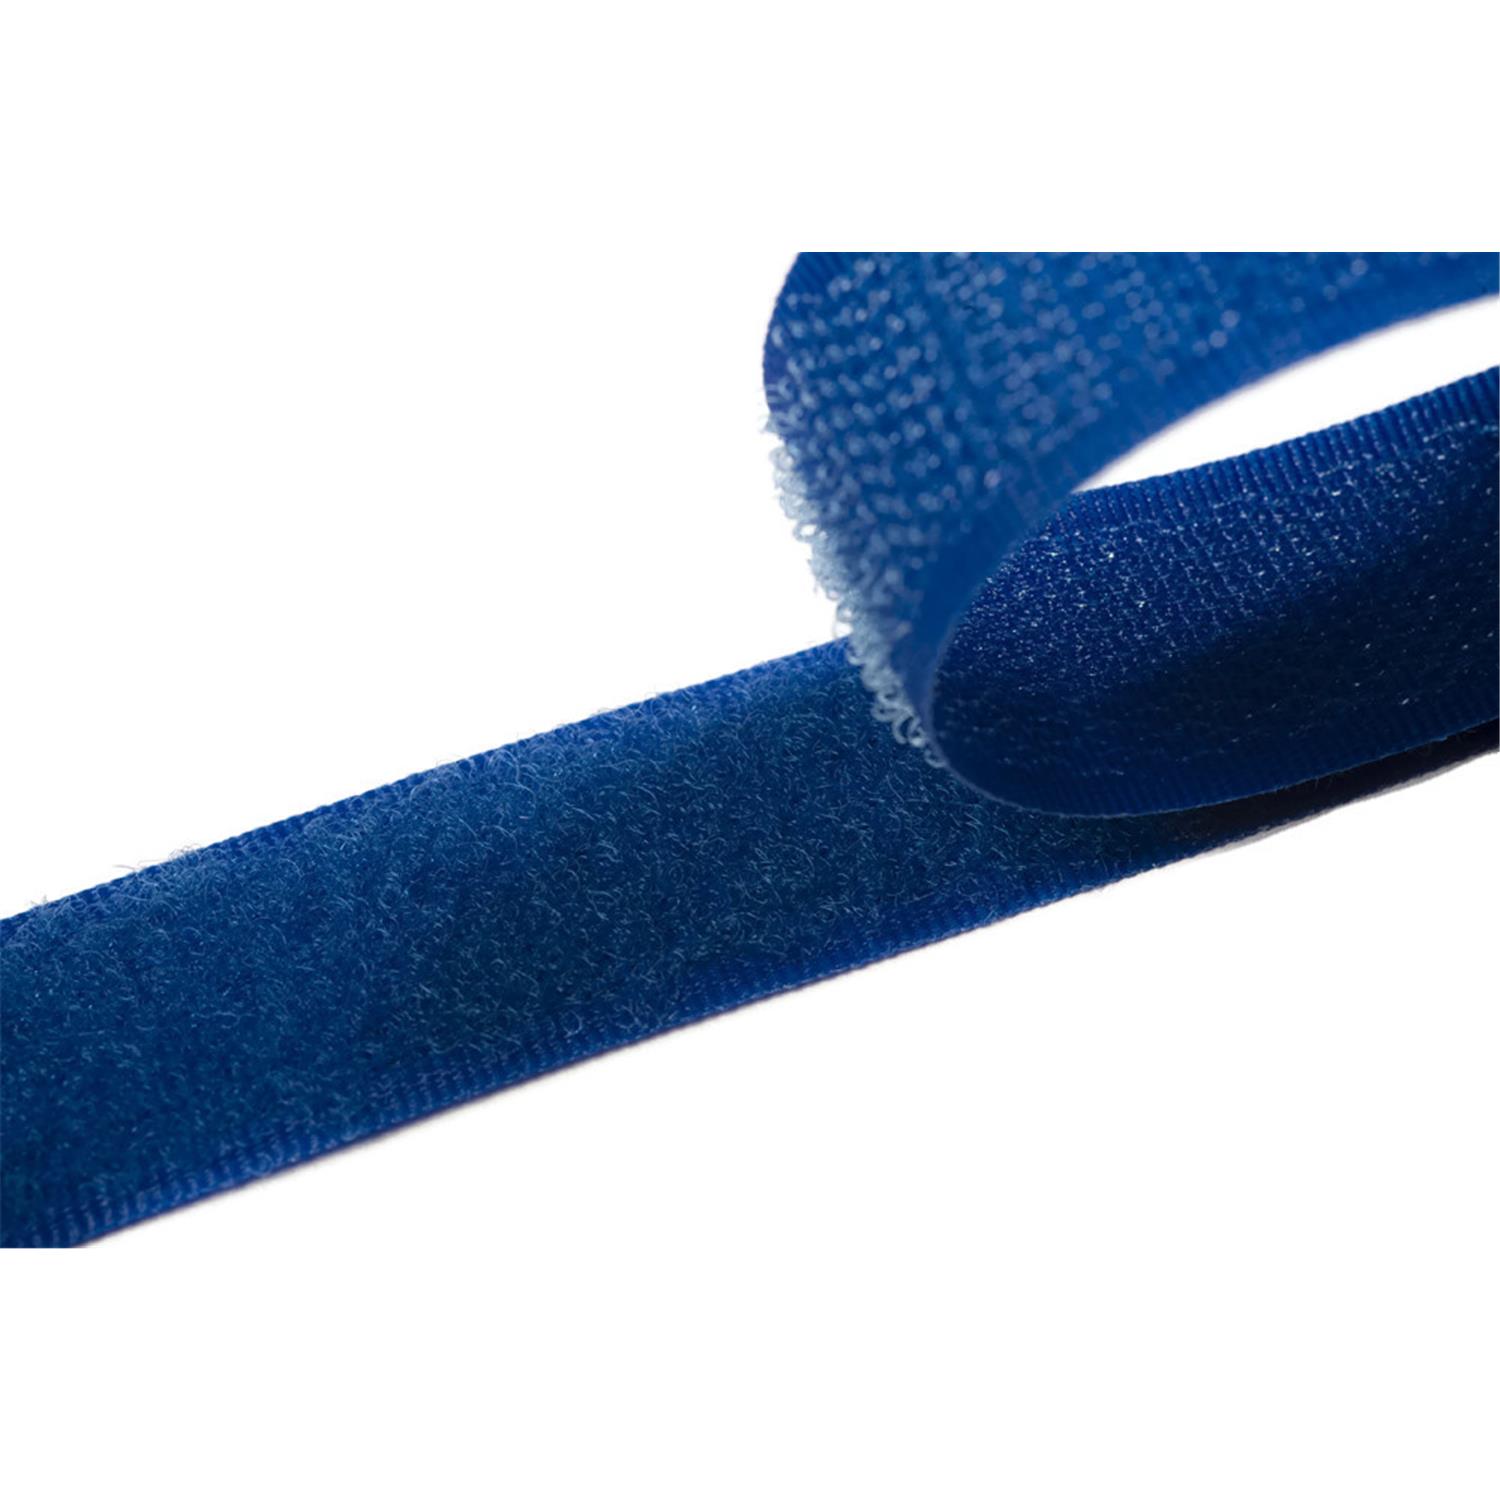 Klettband zum aufnähen, 25 mm, royalblau #06 4 Meter